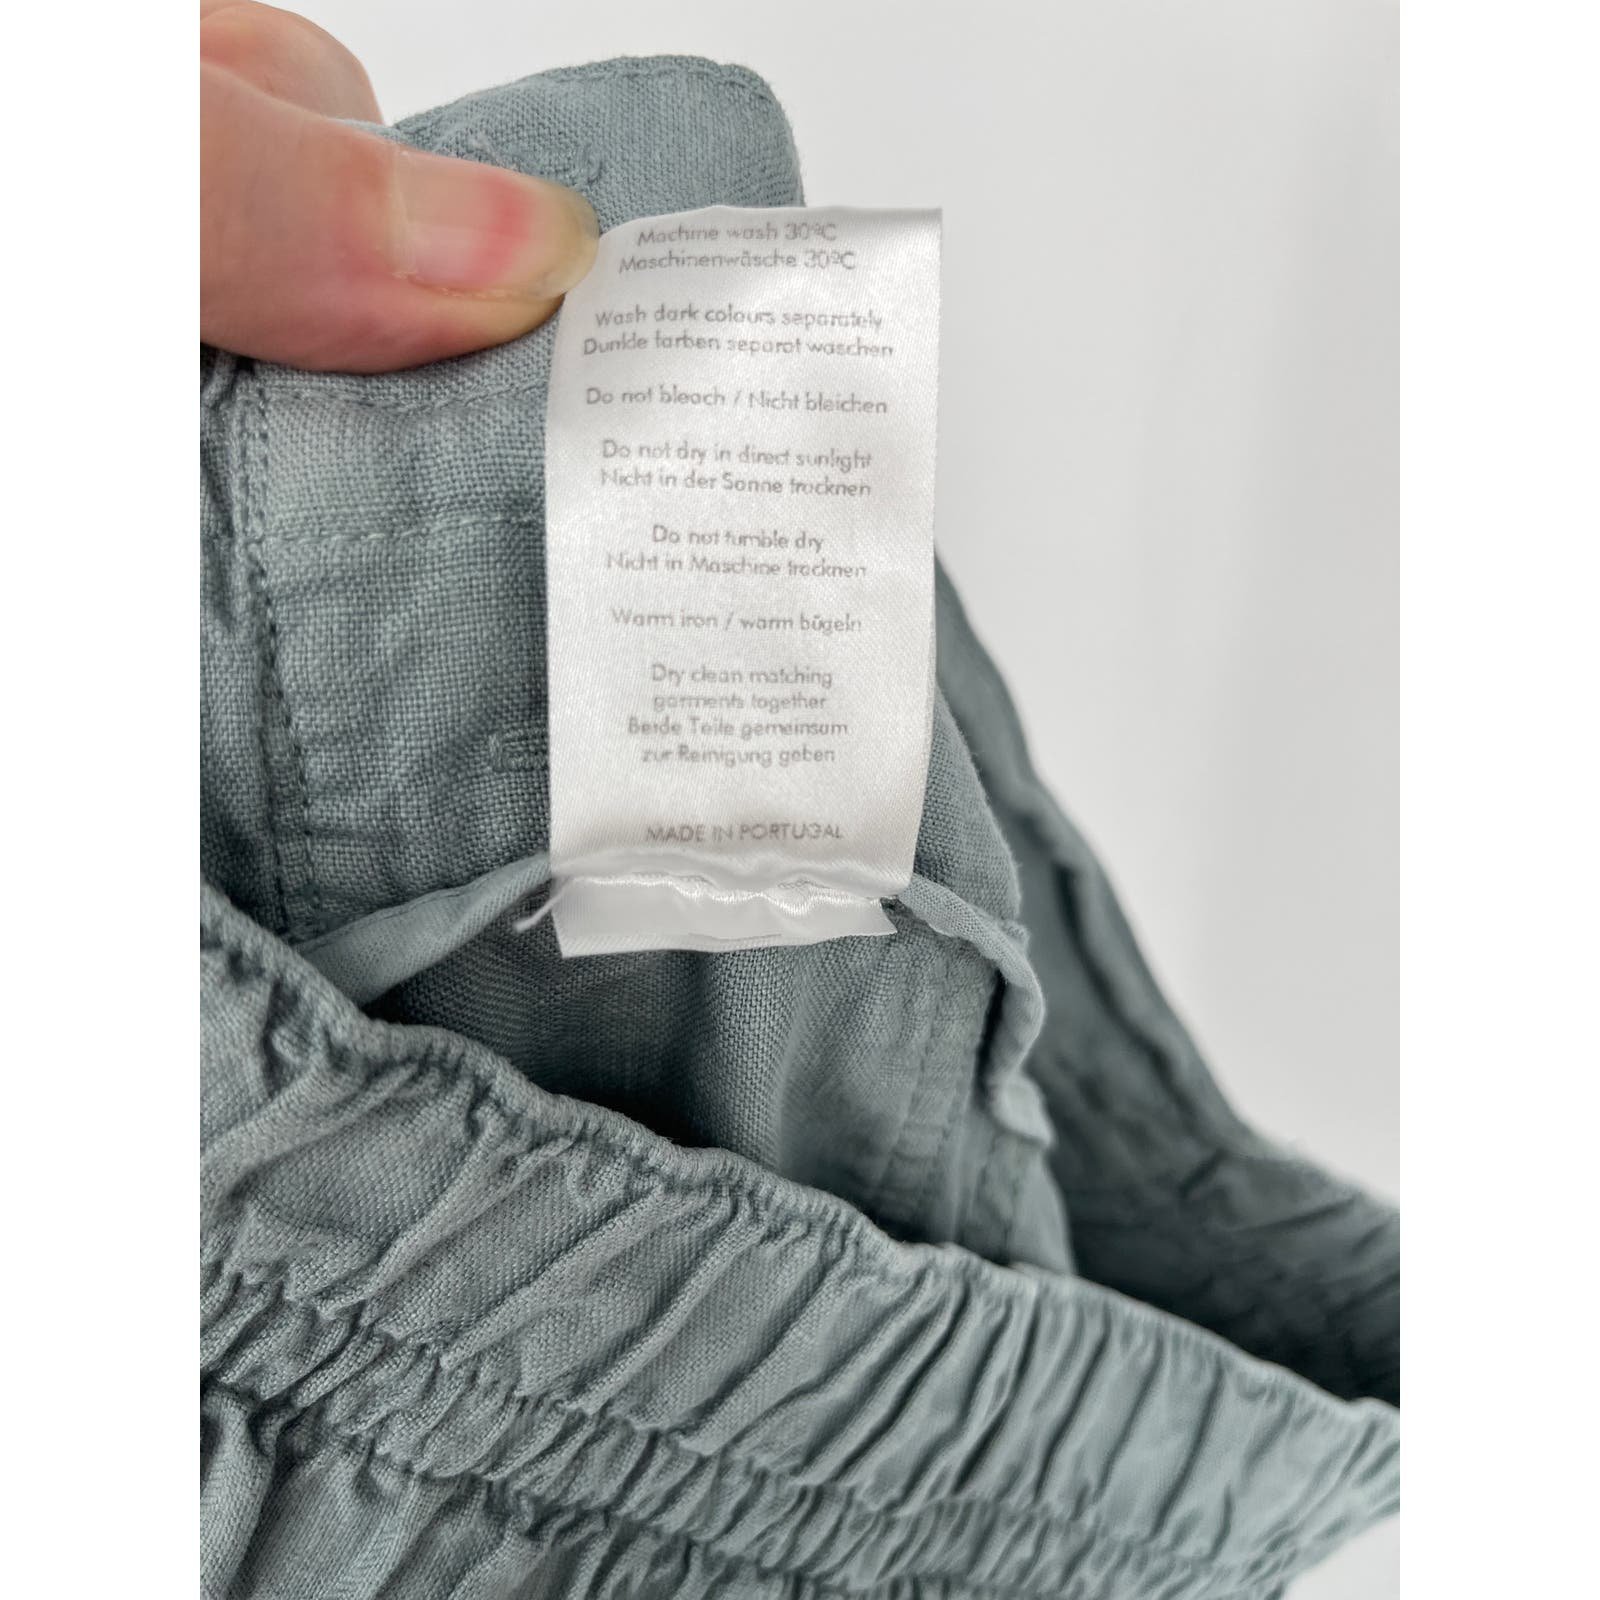 Custom Wrap London Slim Capri Pants Sz 8 Pale Blue 100% Linen Classic Cropped H5W7il3DT on sale